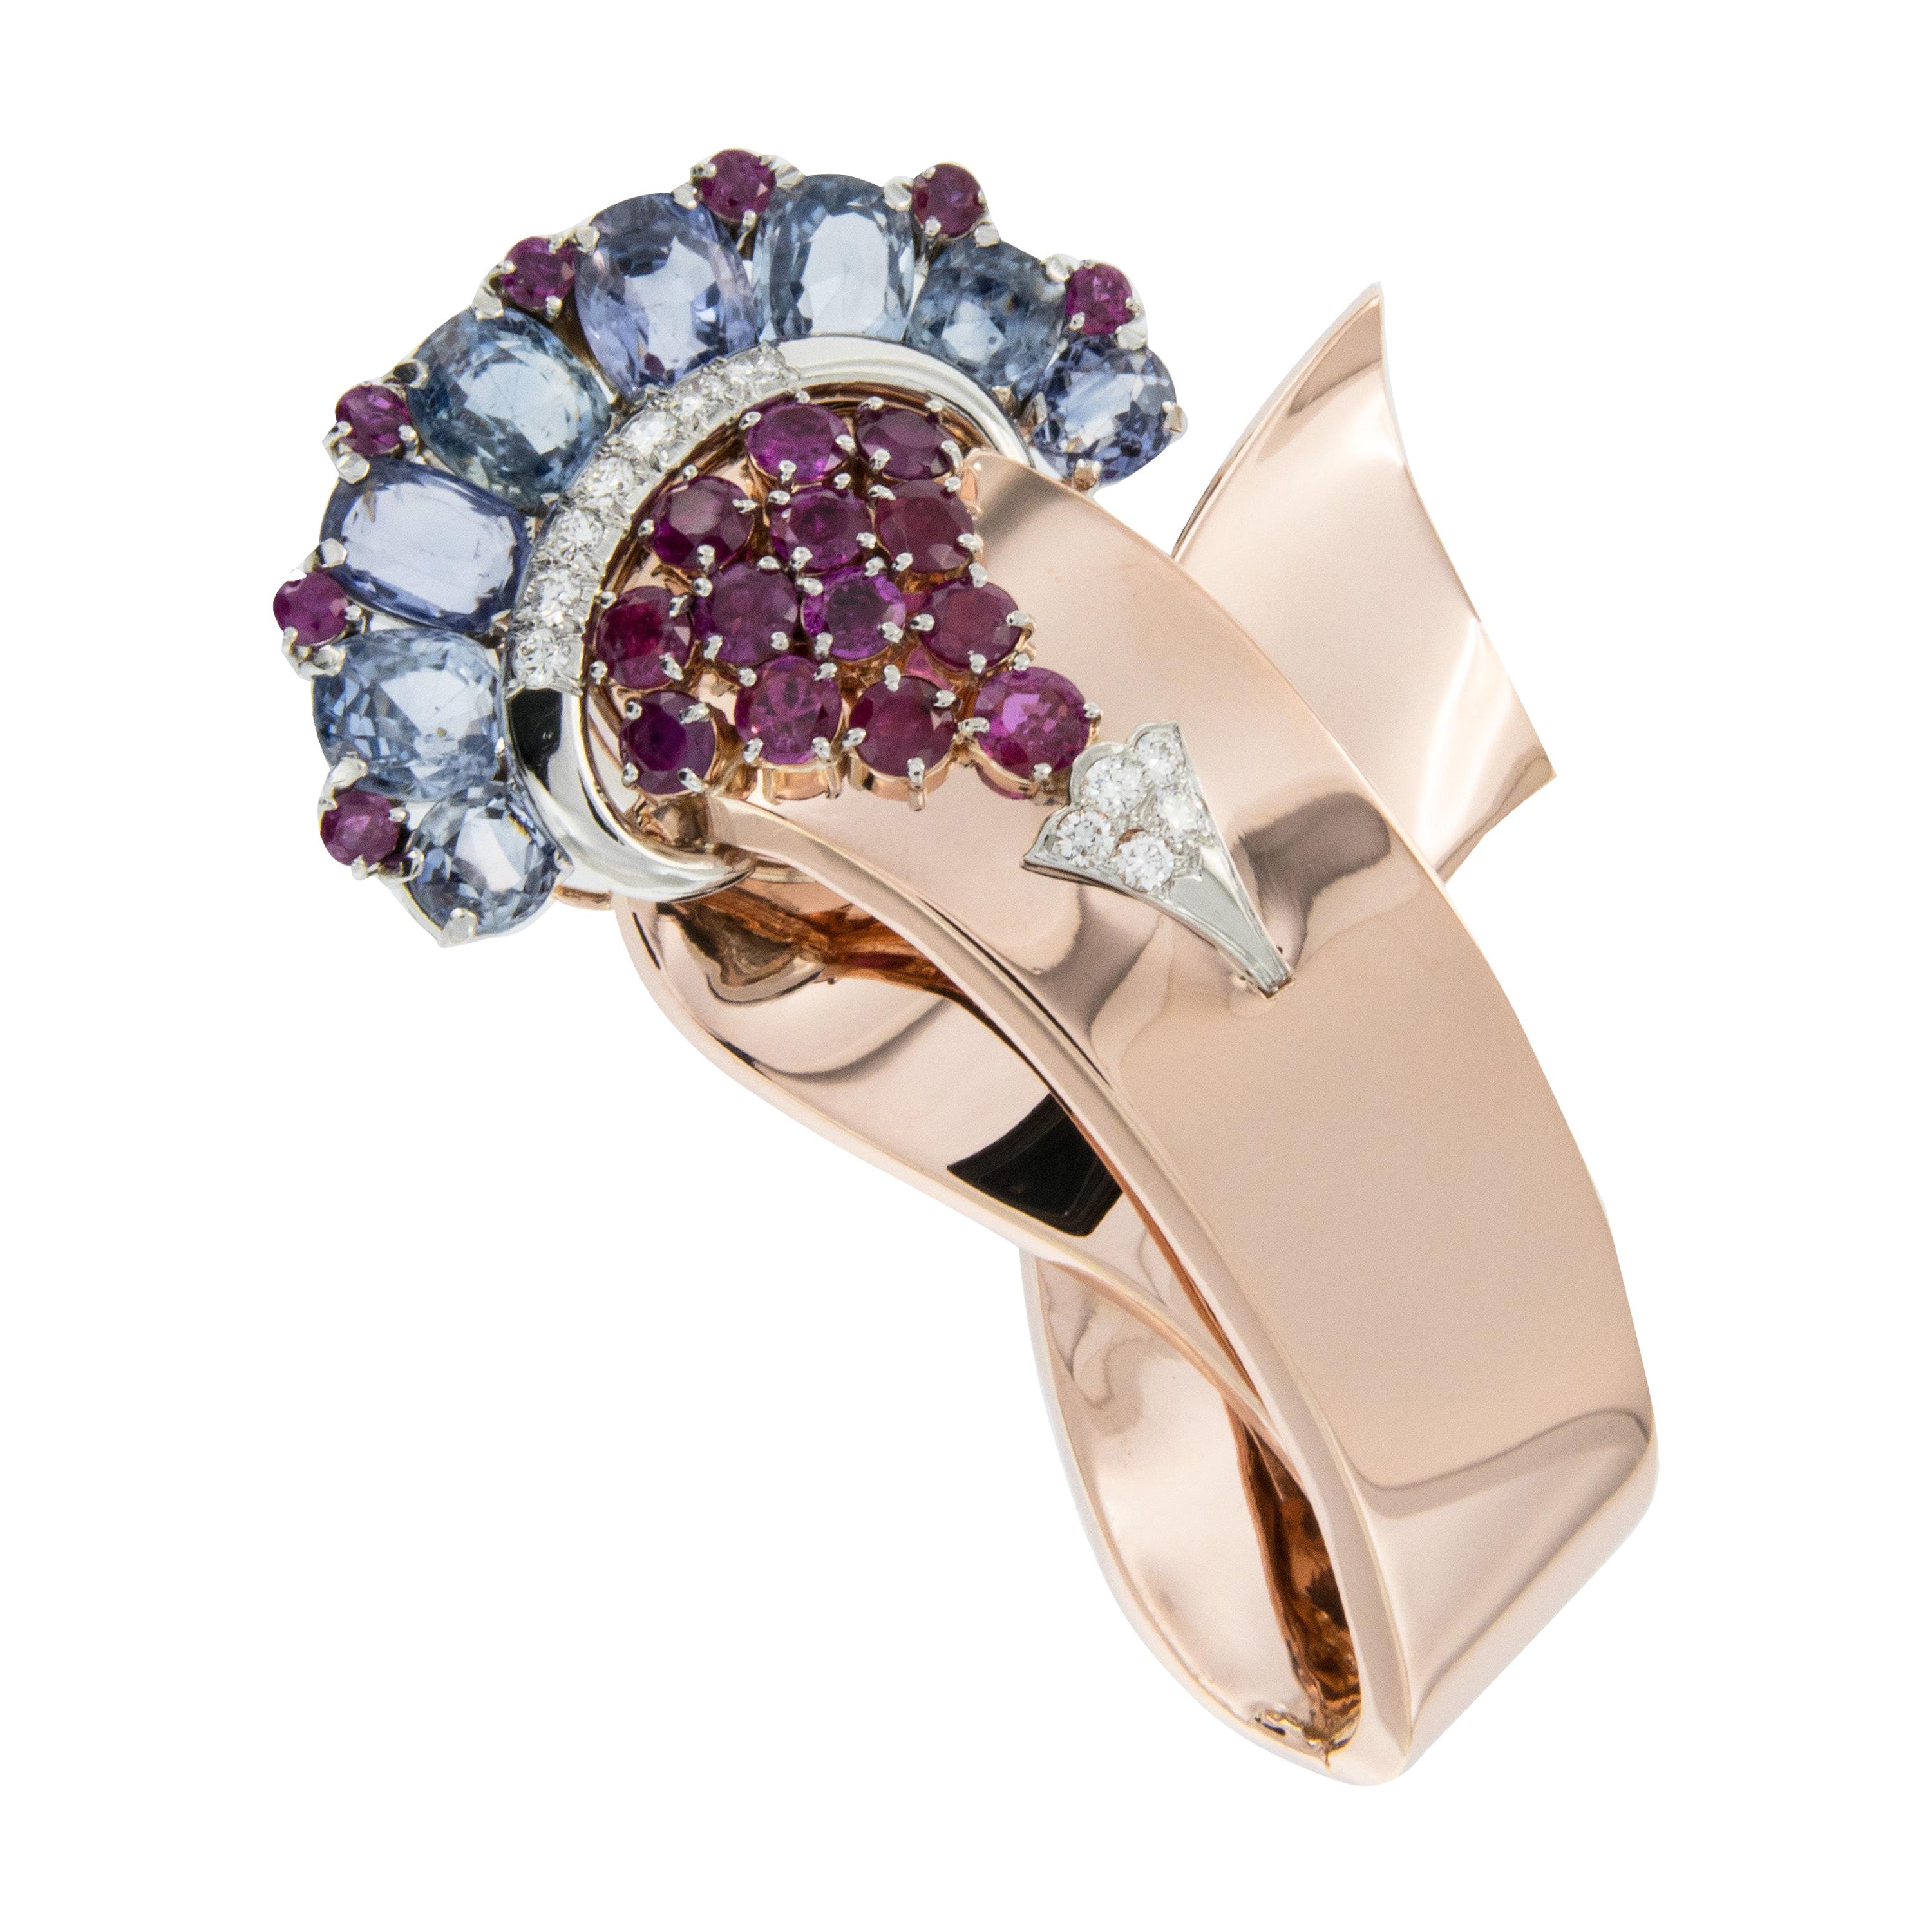 Montre / broche Movado en or rose et blanc 14 carats avec diamants, rubis et saphirs